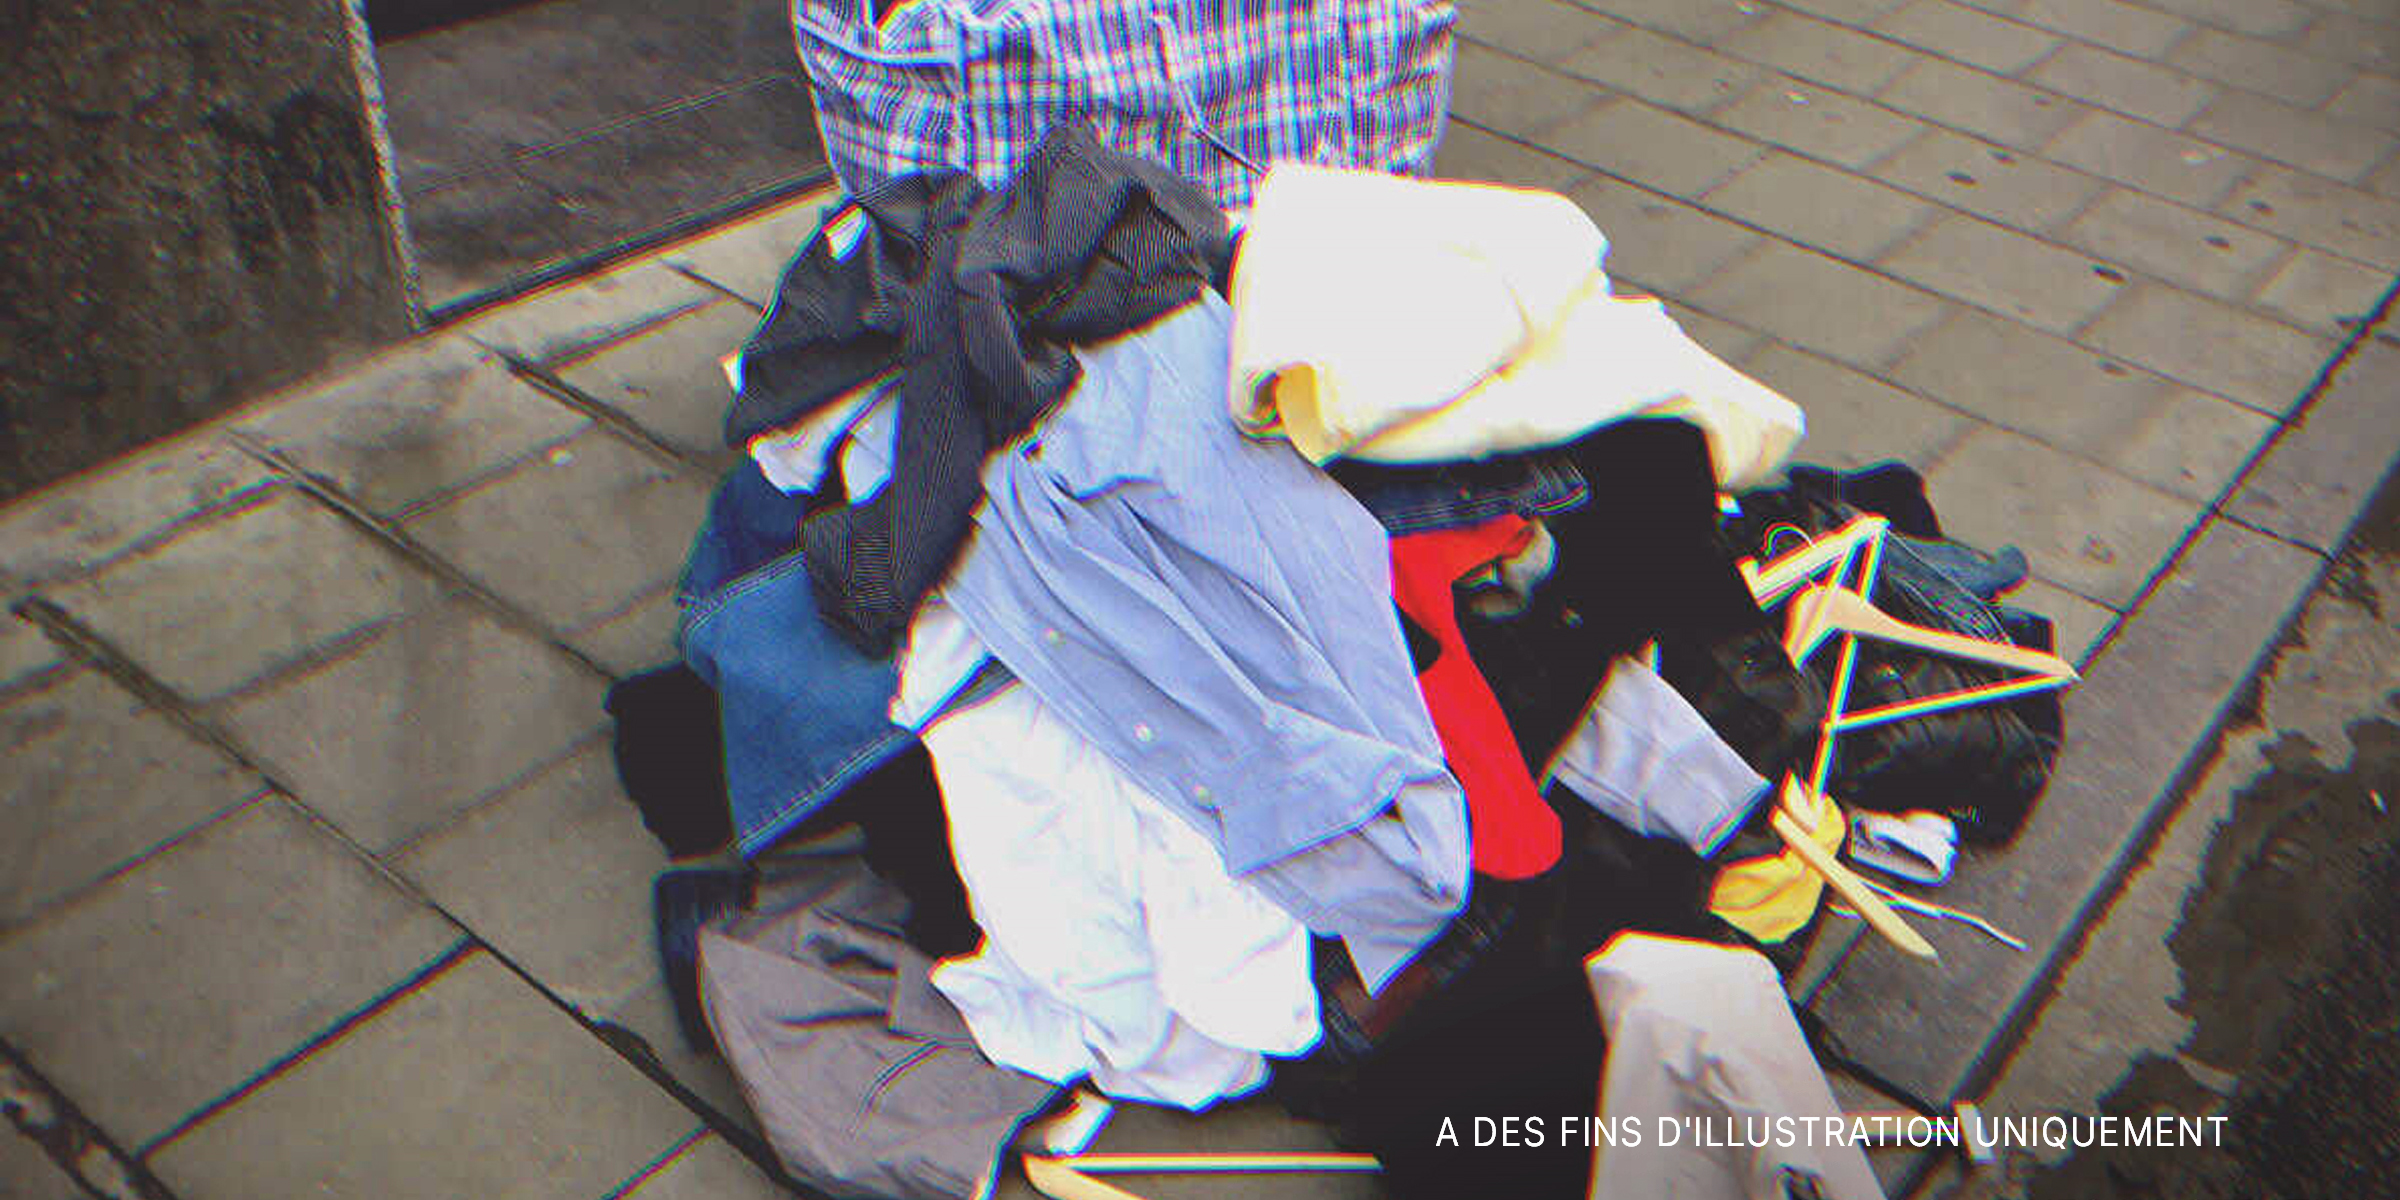 Une pile de vêtements dans la rue | Source : Shutterstock